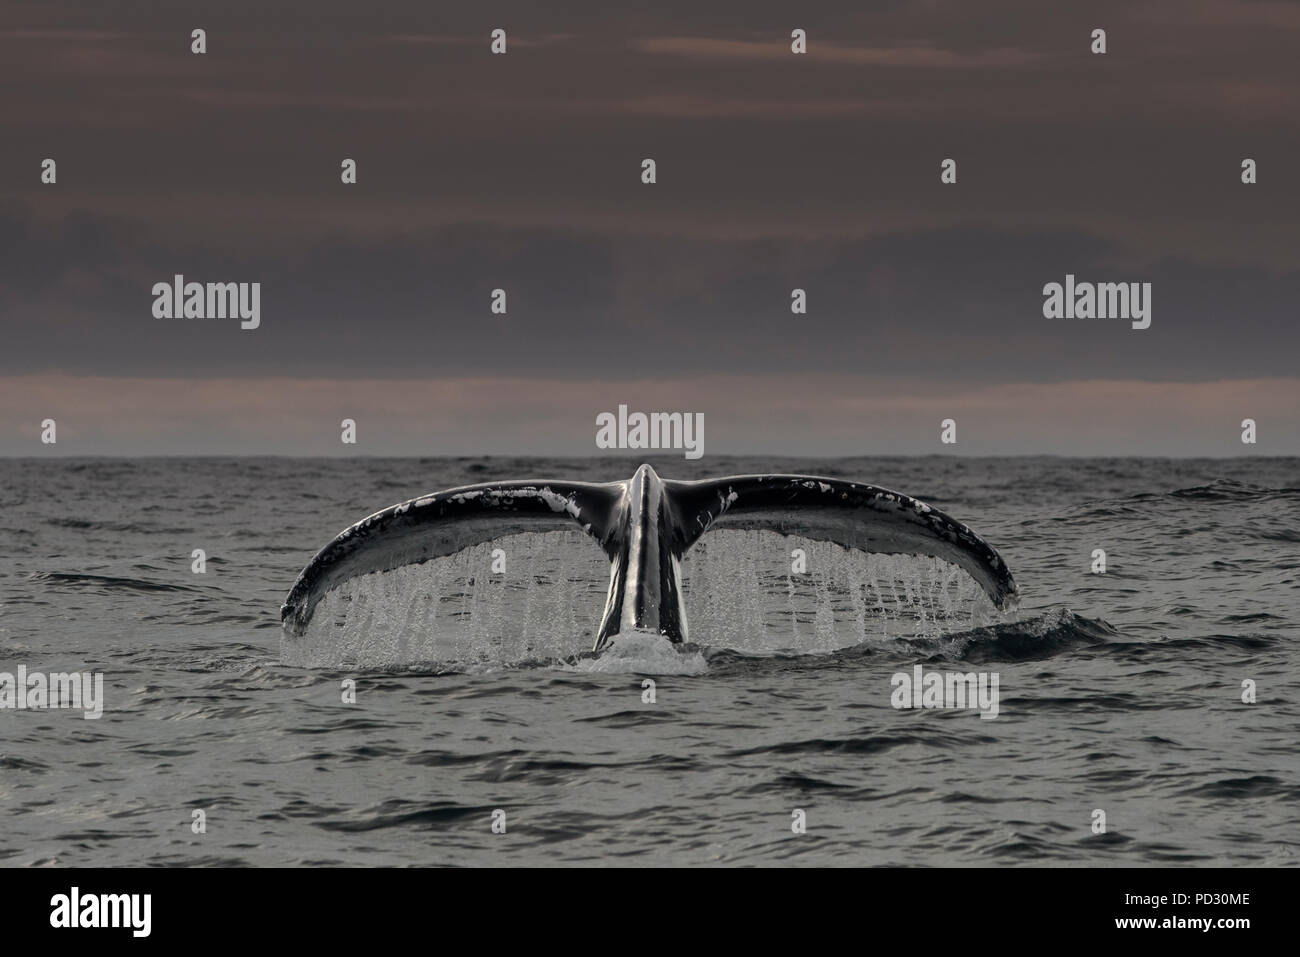 Queue de baleine à bosse au-dessus de la surface de l'eau, Dingle, Kerry, Irlande Banque D'Images